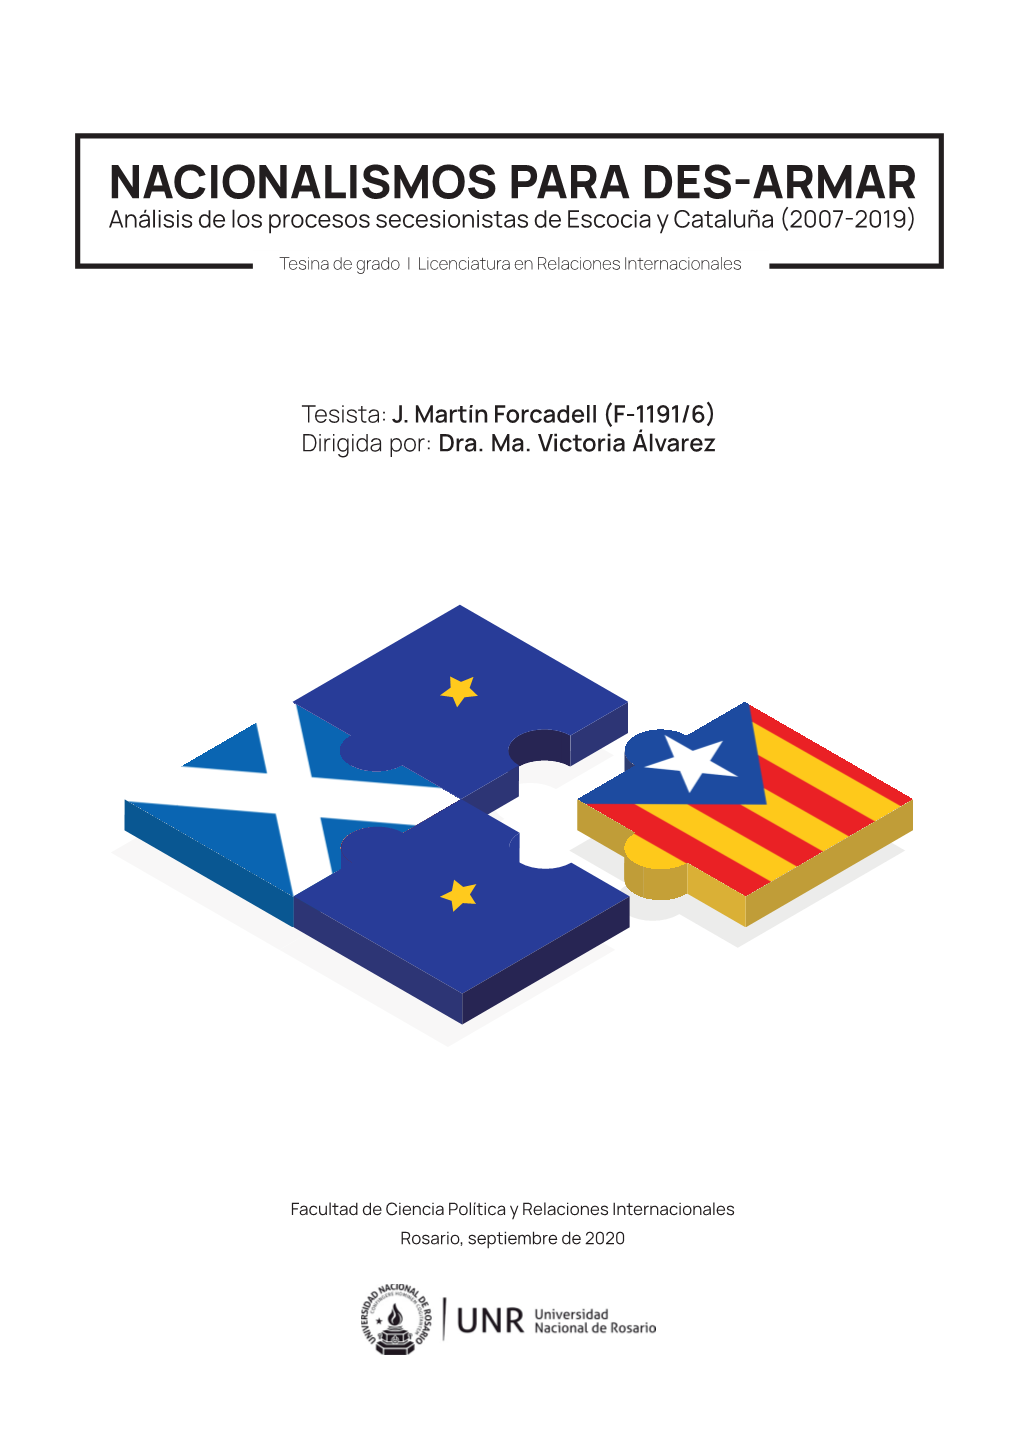 NACIONALISMOS PARA DES-ARMAR Análisis De Los Procesos Secesionistas De Escocia Y Cataluña (2007-2019)